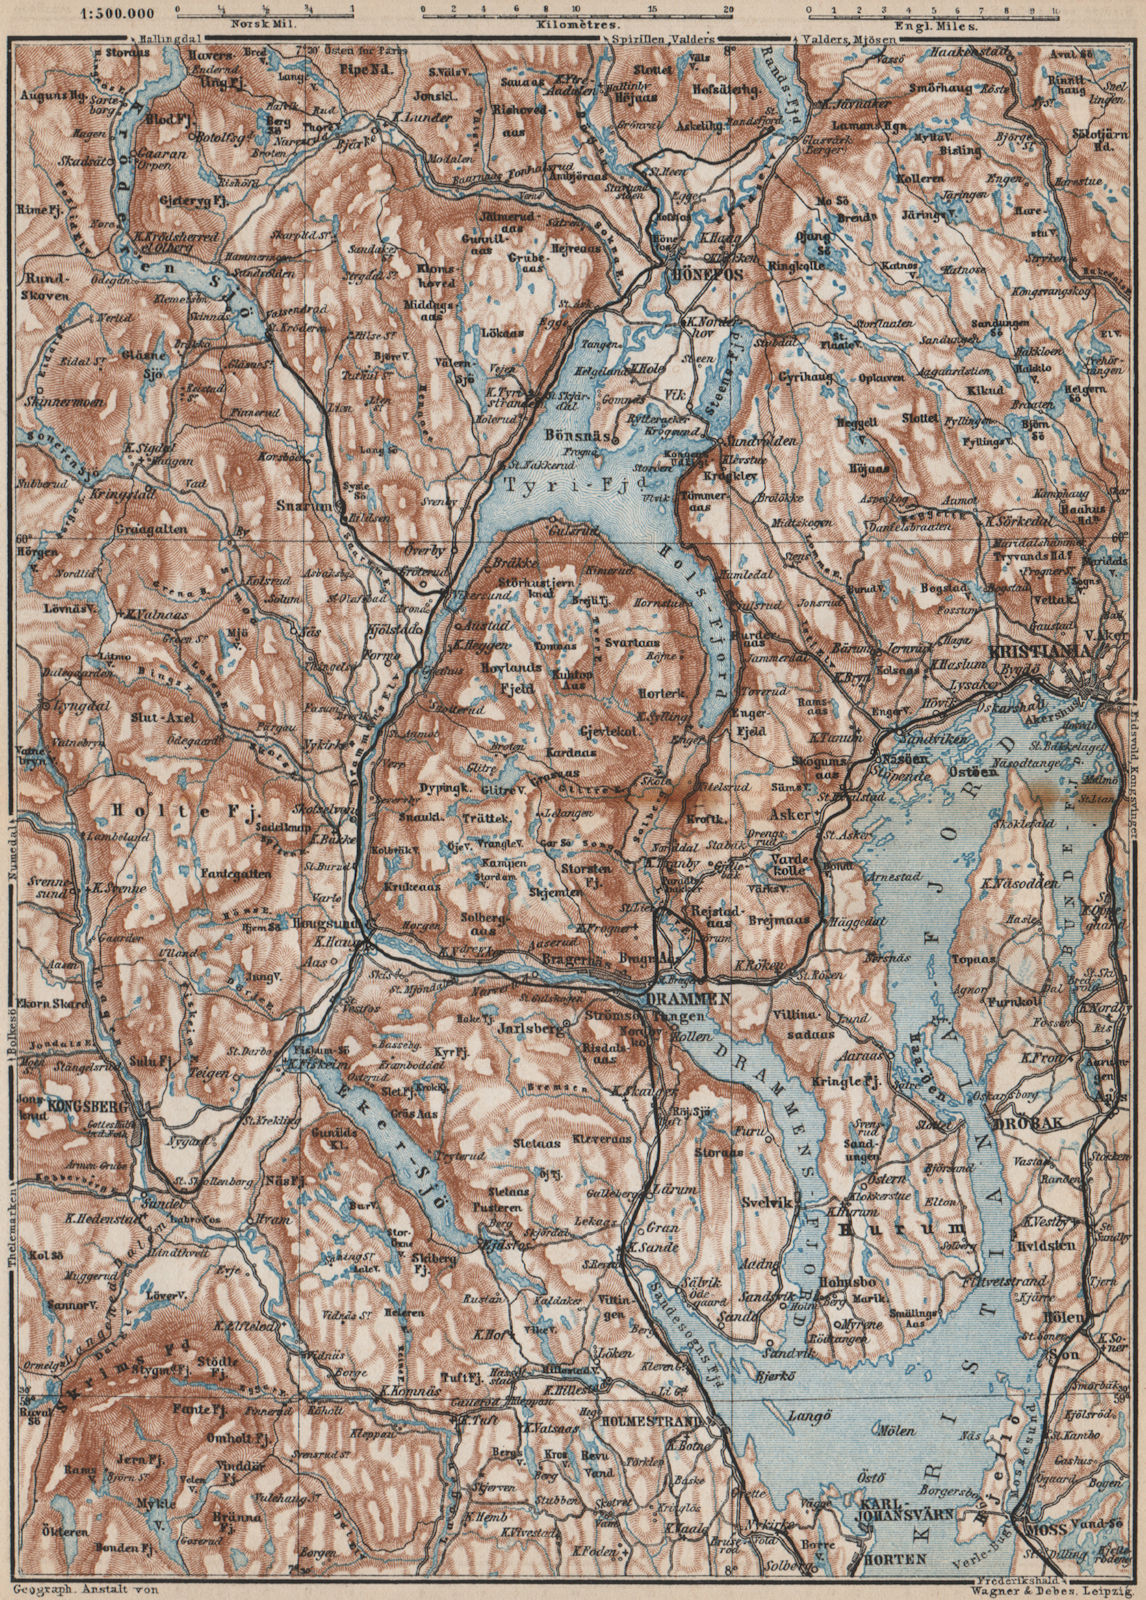 INNER OSLOFJORD. Tyrifjord Kongsberg Lake Krøderen Topo-map. Norway 1885